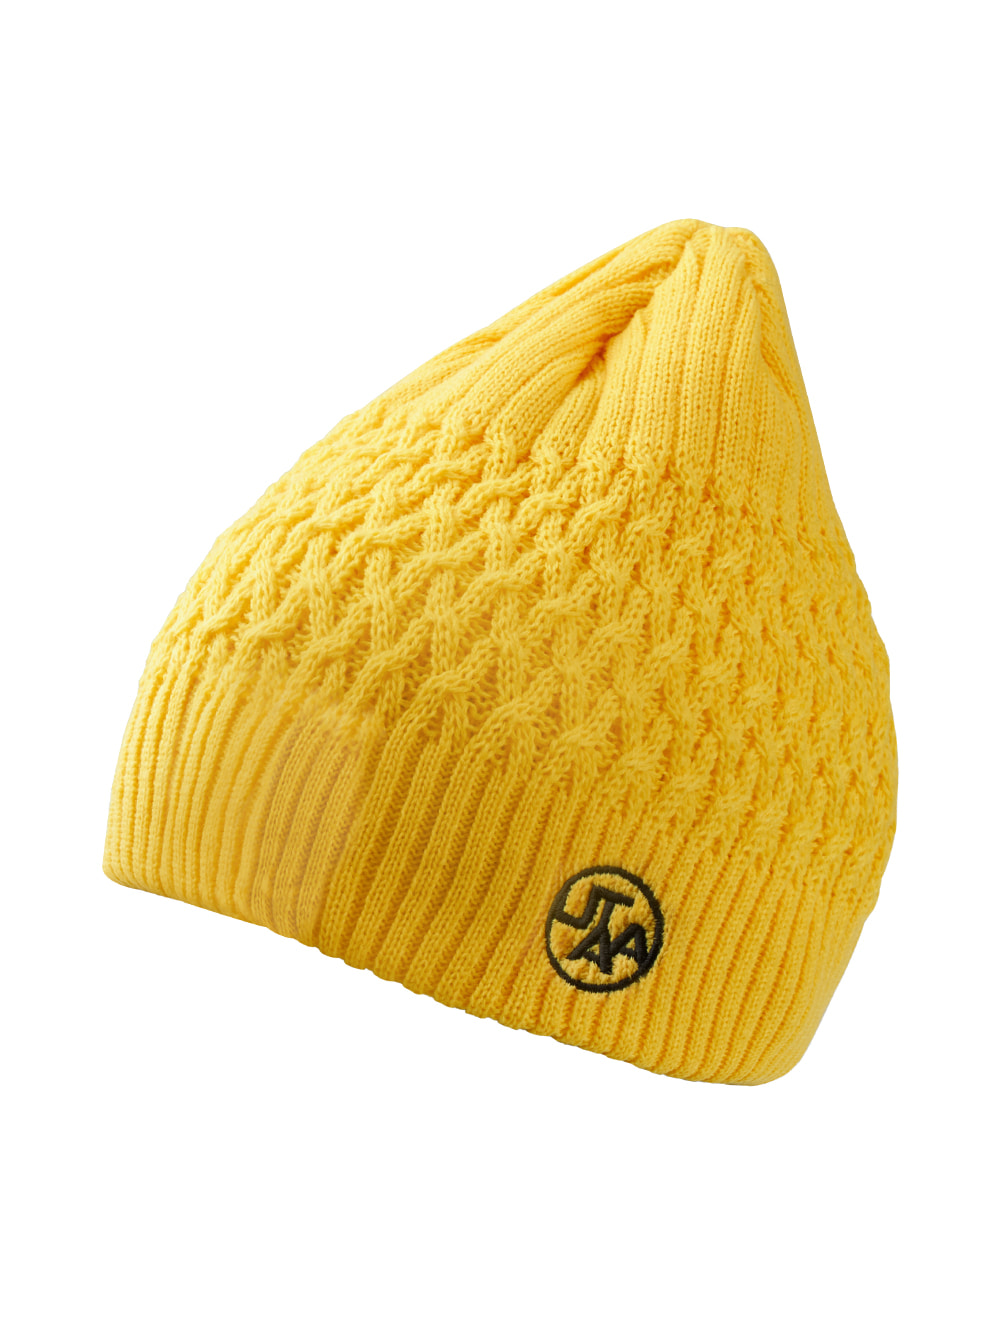 UTAA Whipping Knit Beanie : Yellow (UA4GCF750YE)